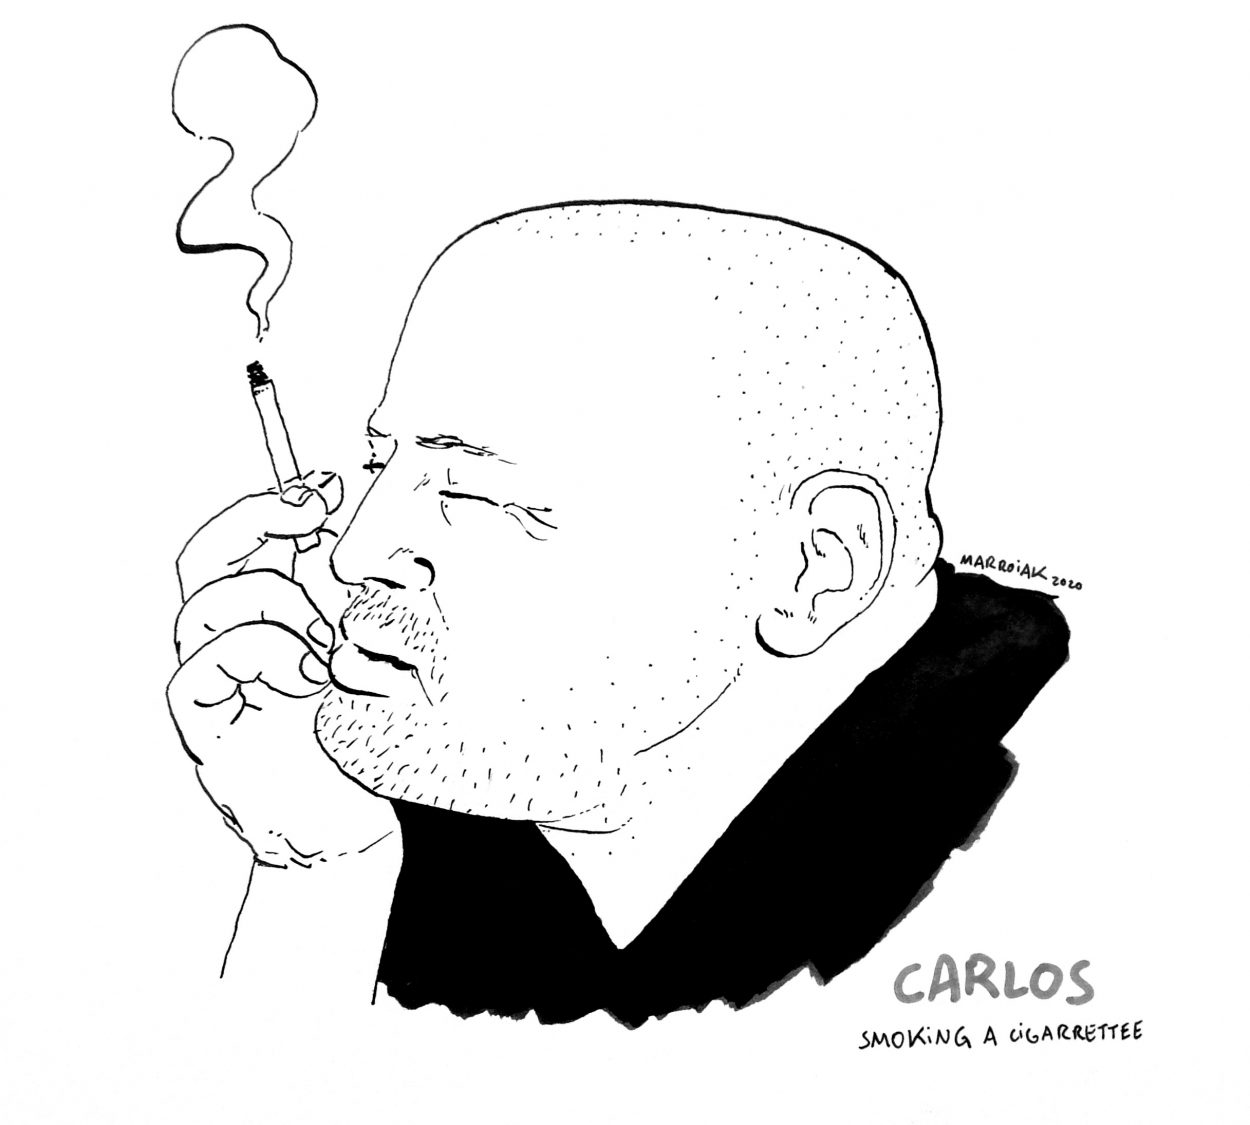 Retrato de Carlos en tinta sobre papel